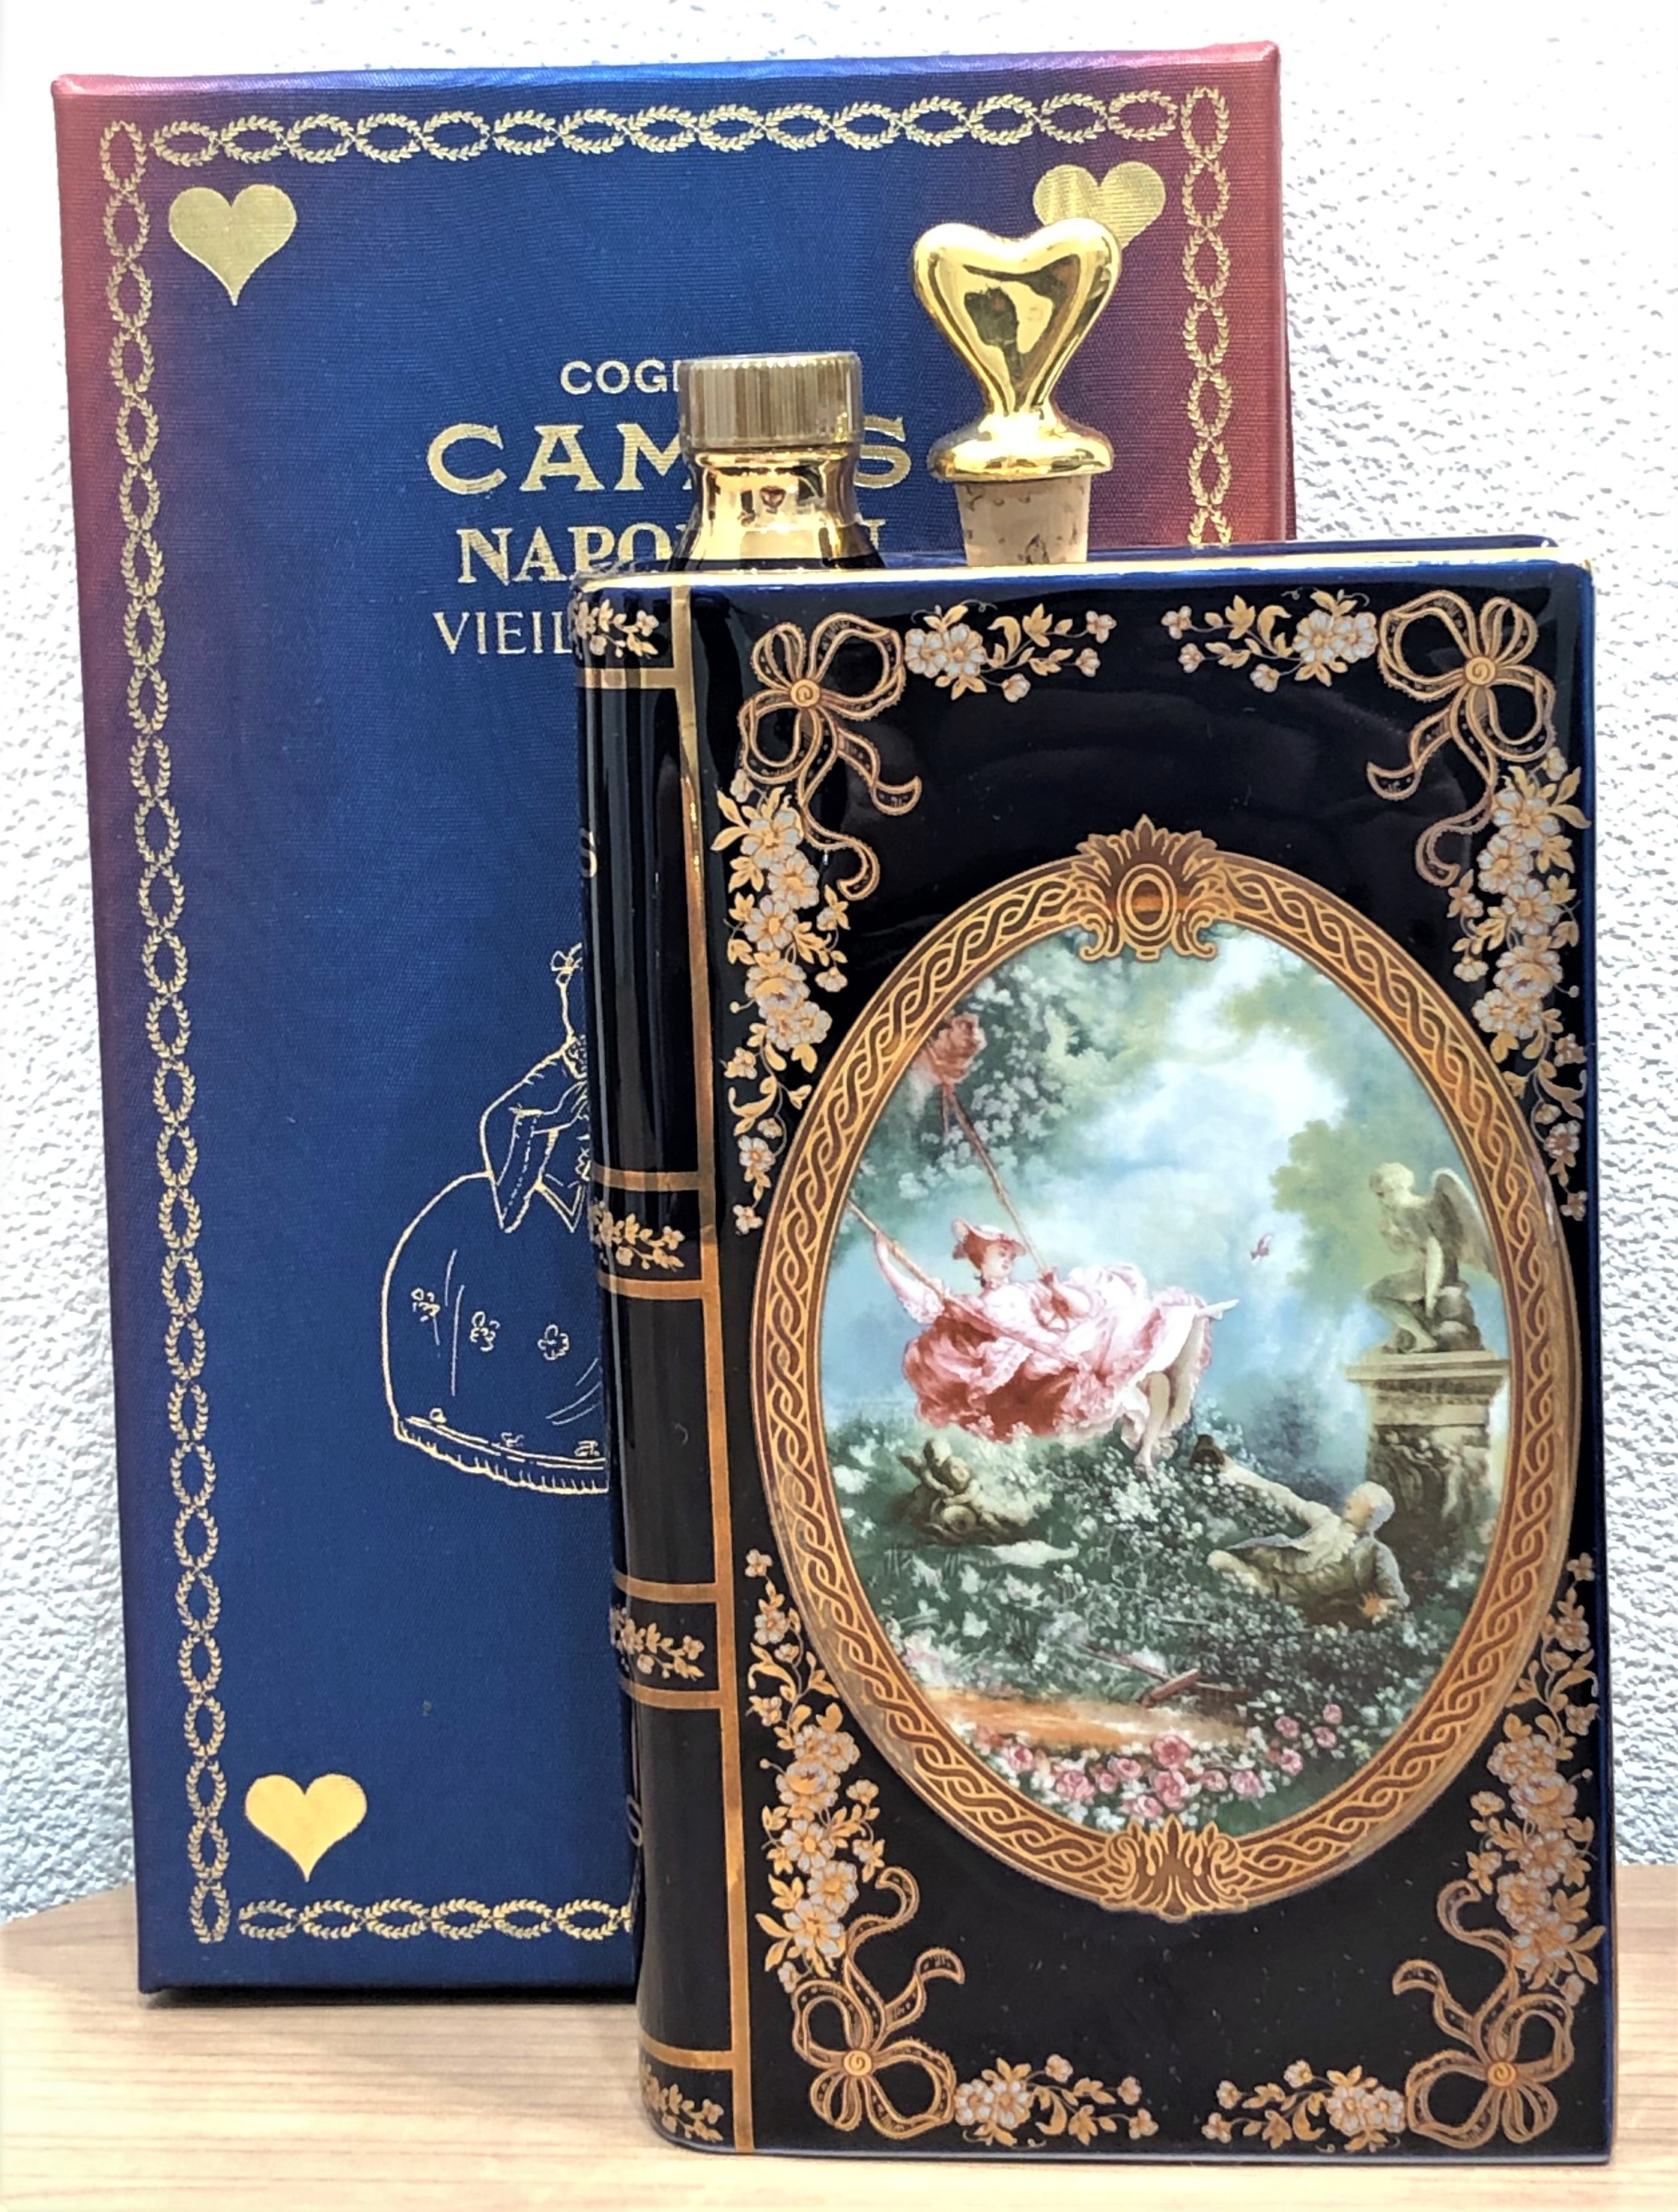 【CAMUS/カミュ】ナポレオン ブック ロミオとジュリエット 紳士 700ml ブランデー